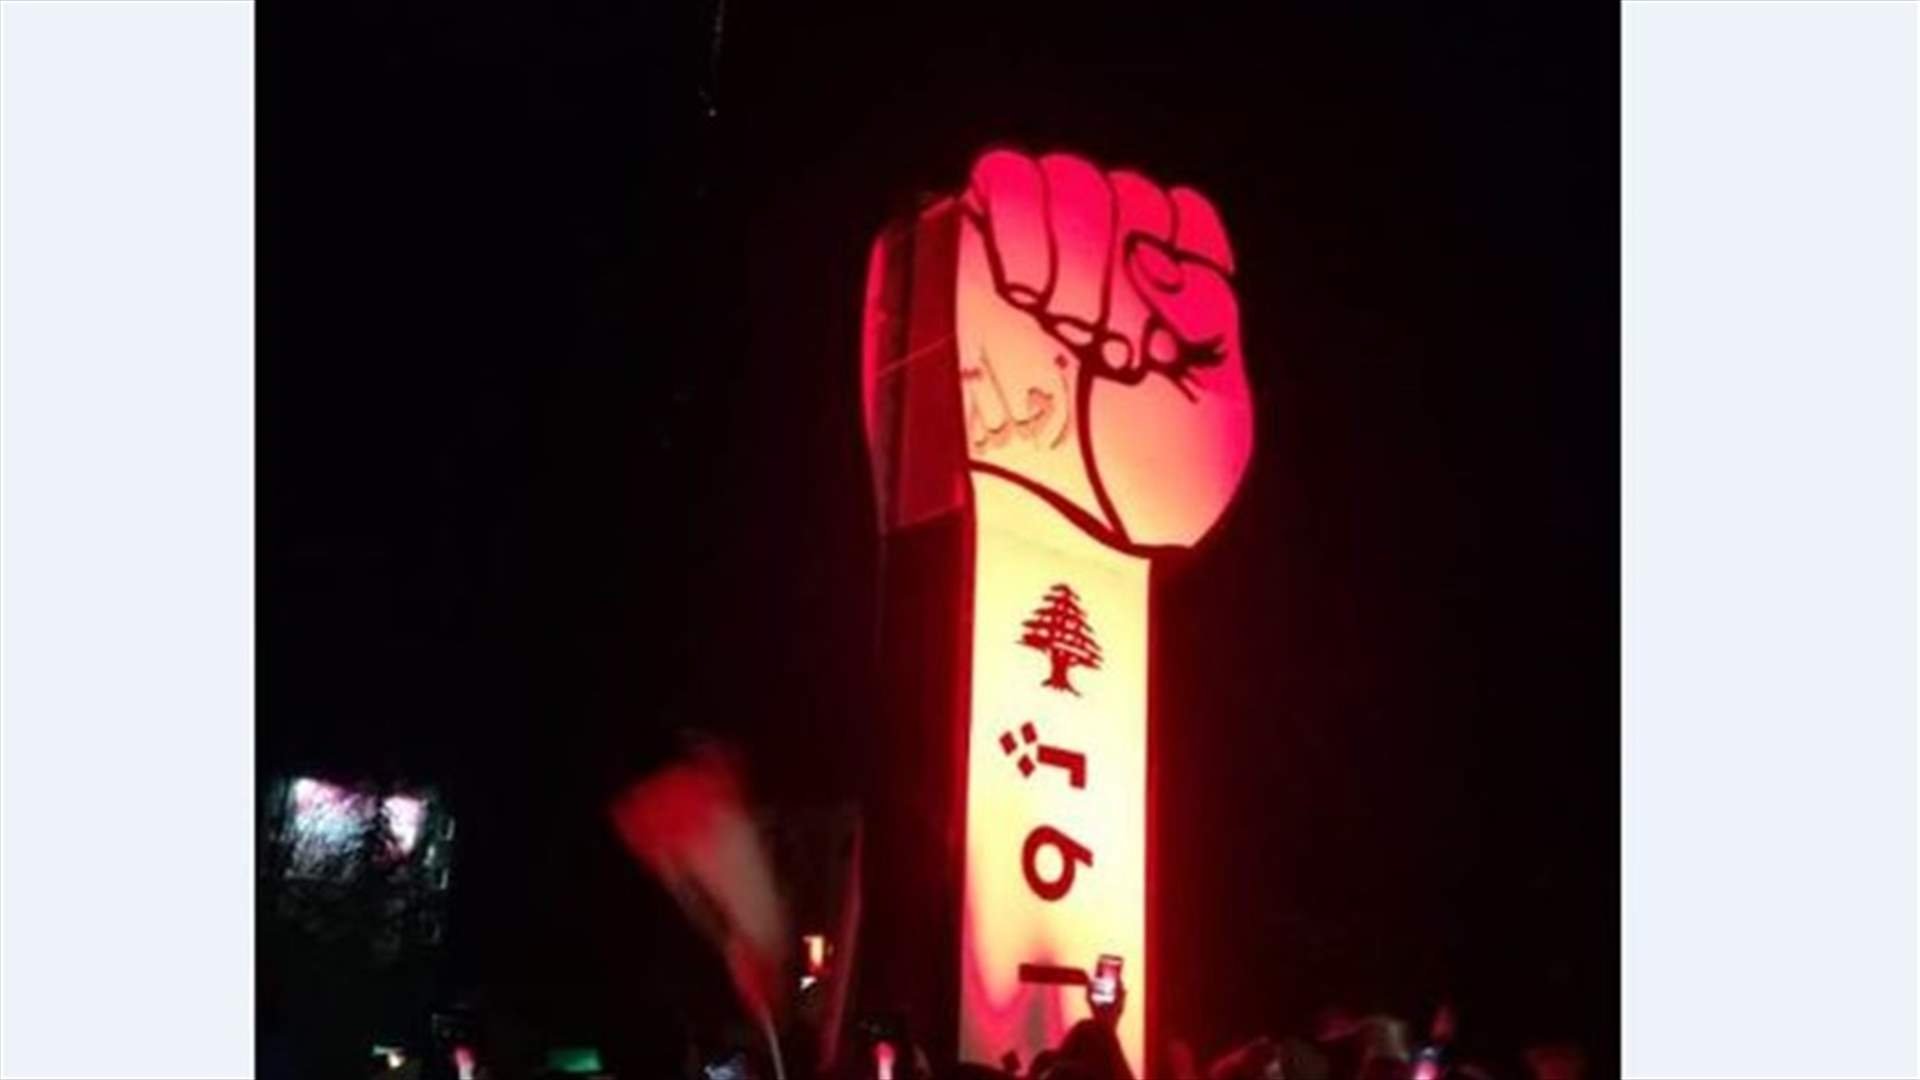 رفع مجسم لقبضة الثورة عند مستديرة زحلة الرئيسية (صورة)